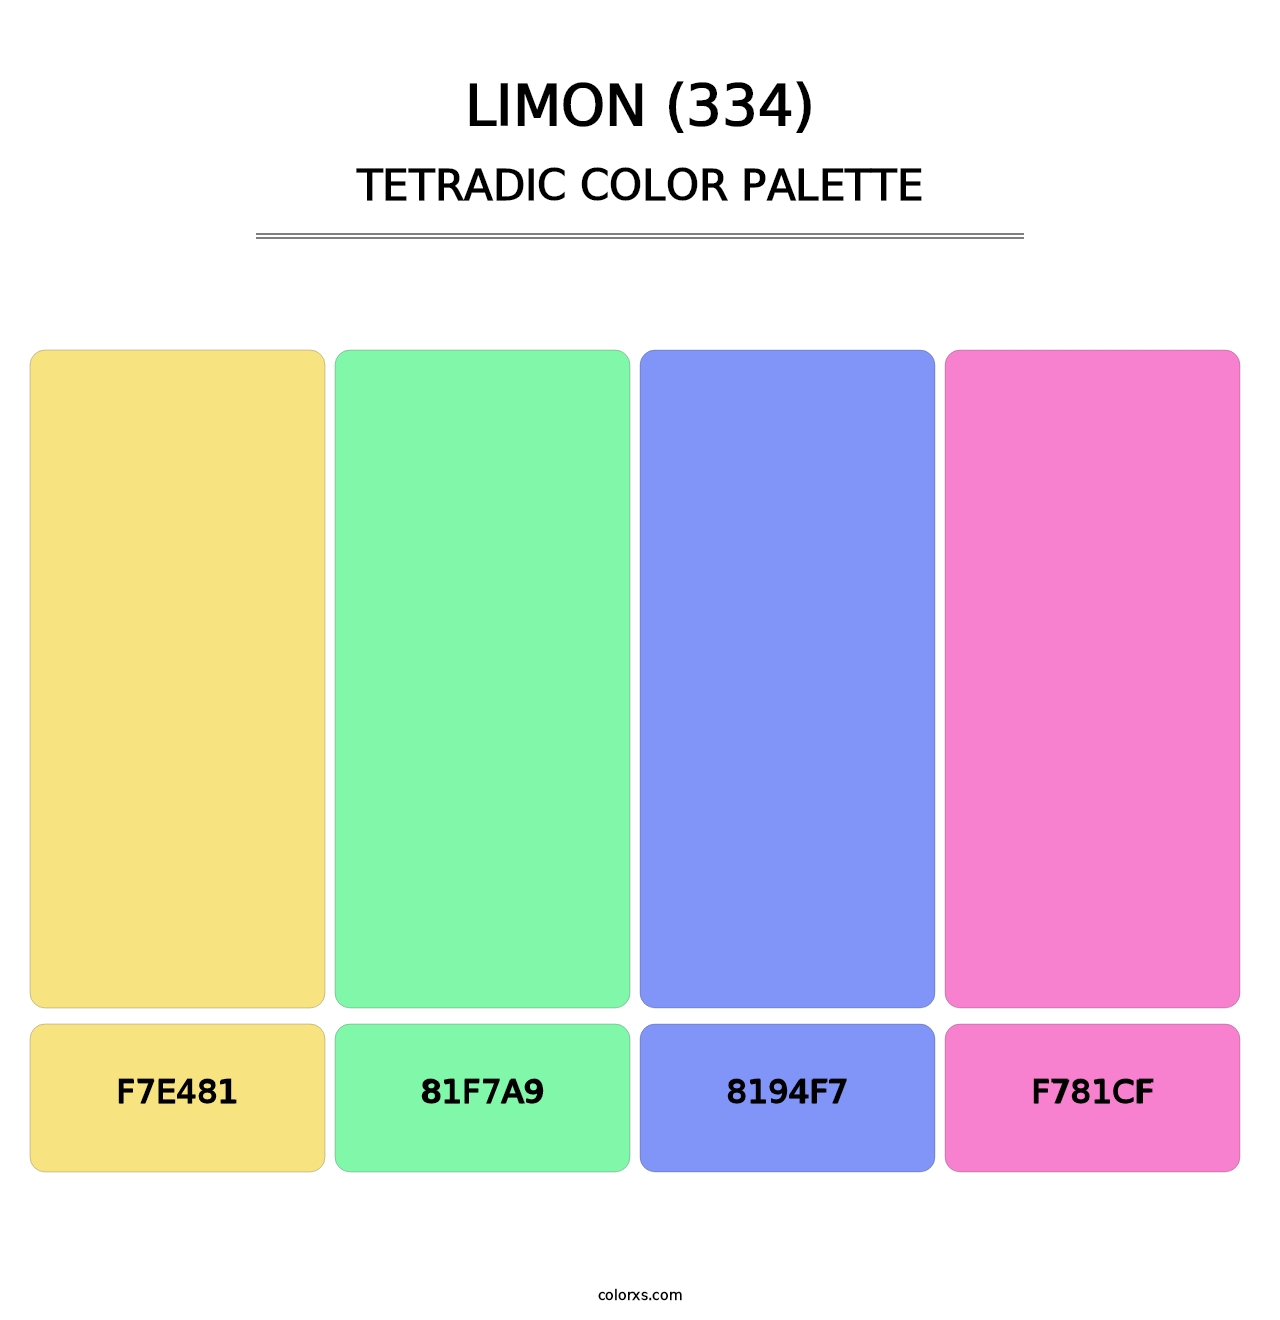 Limon (334) - Tetradic Color Palette